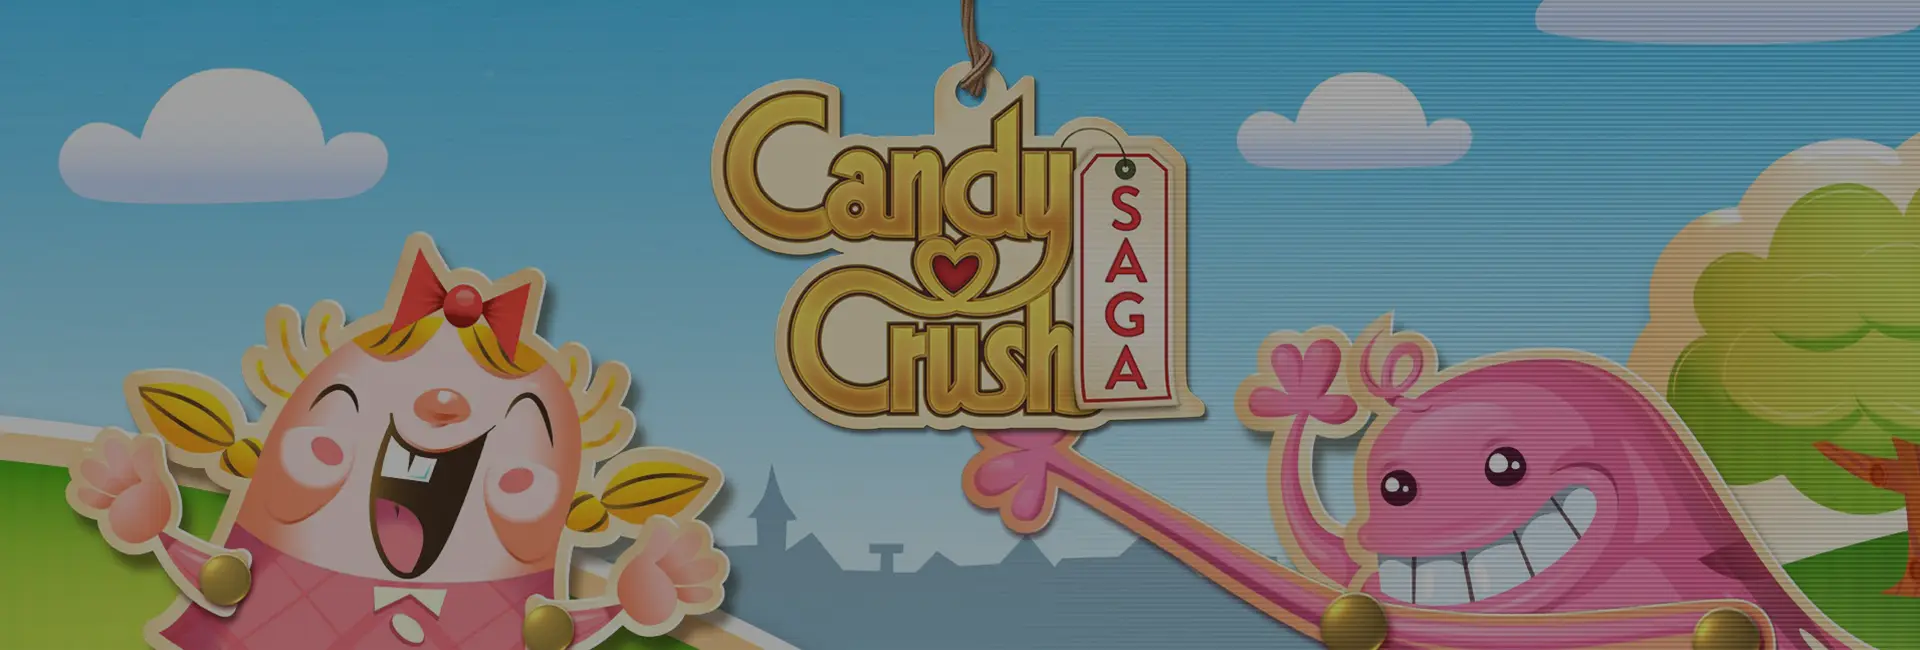 Candy Crash Saga - 25$ Gold Bar Code